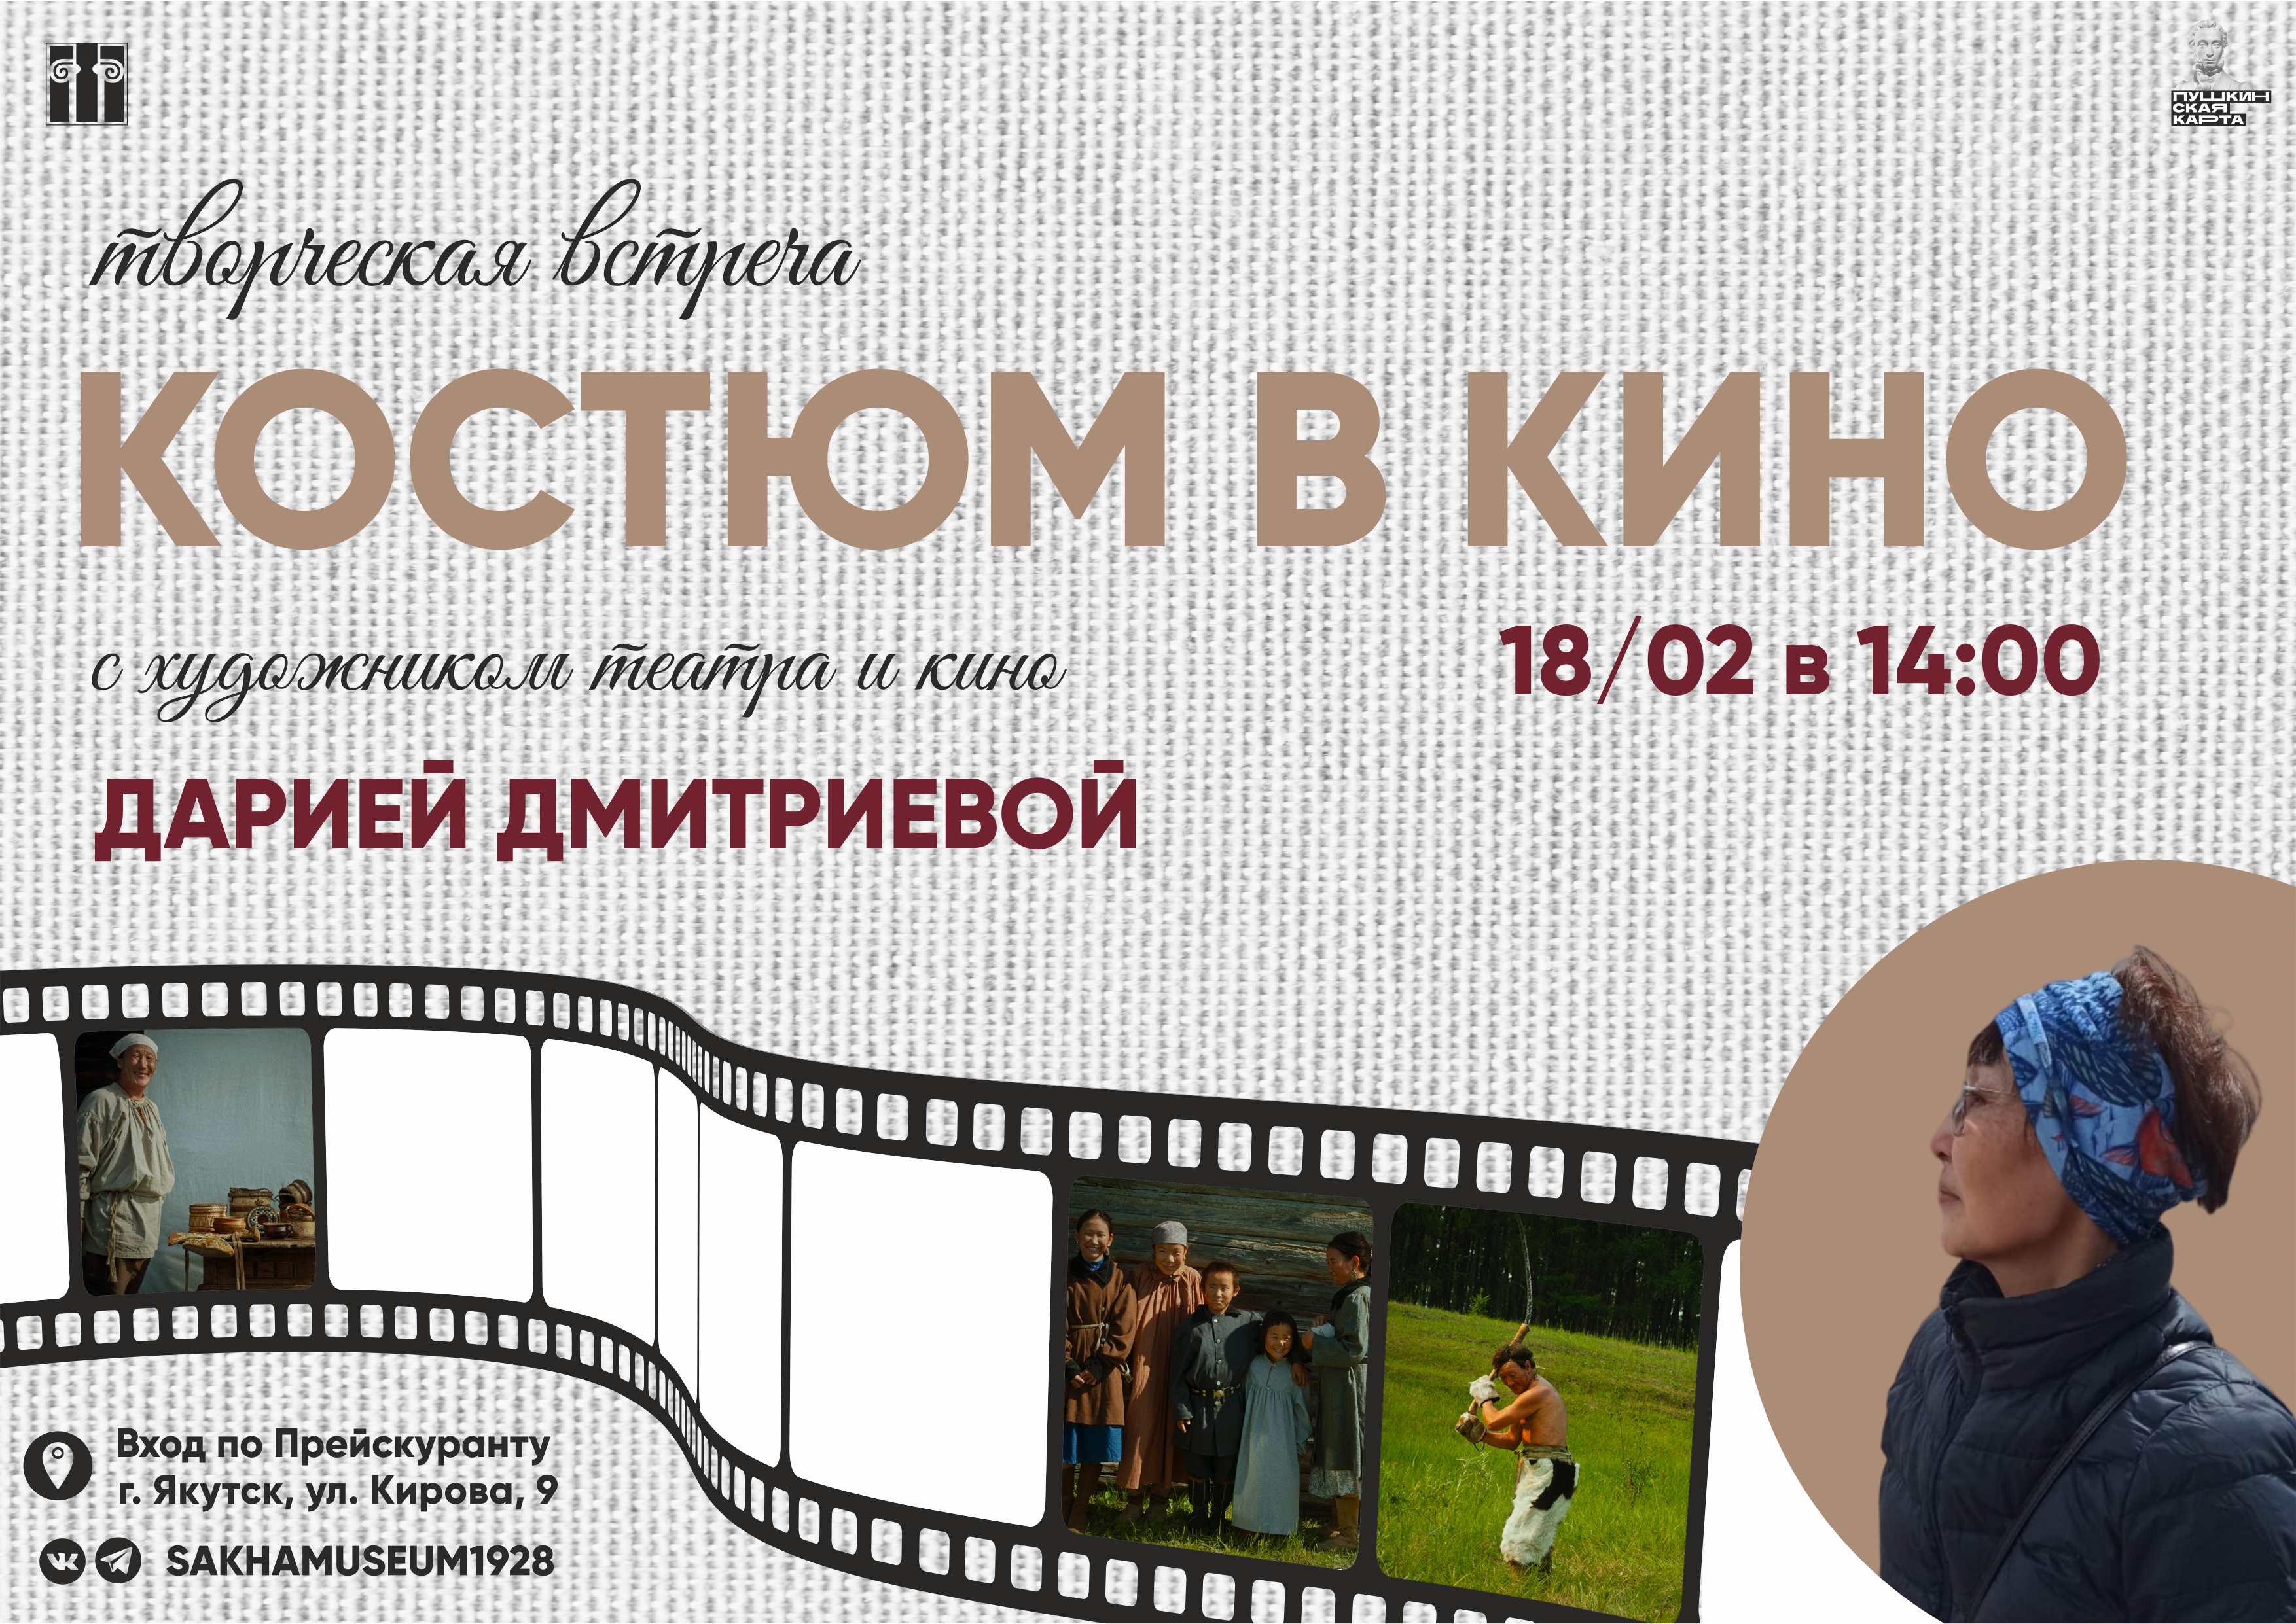 Приглашаем на творческую встречу «Костюм в кино» с художником театра и кино Дарией Дмитриевой